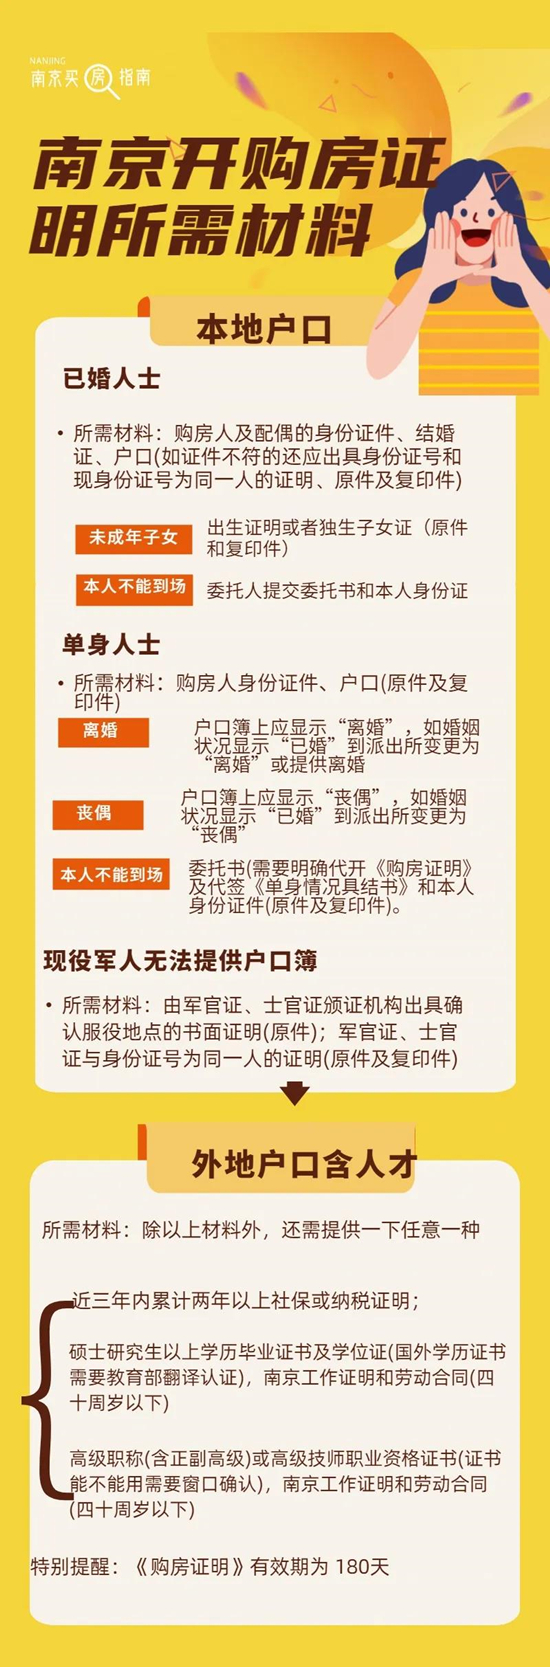 南京2021年购房落户政策 | 买房指南